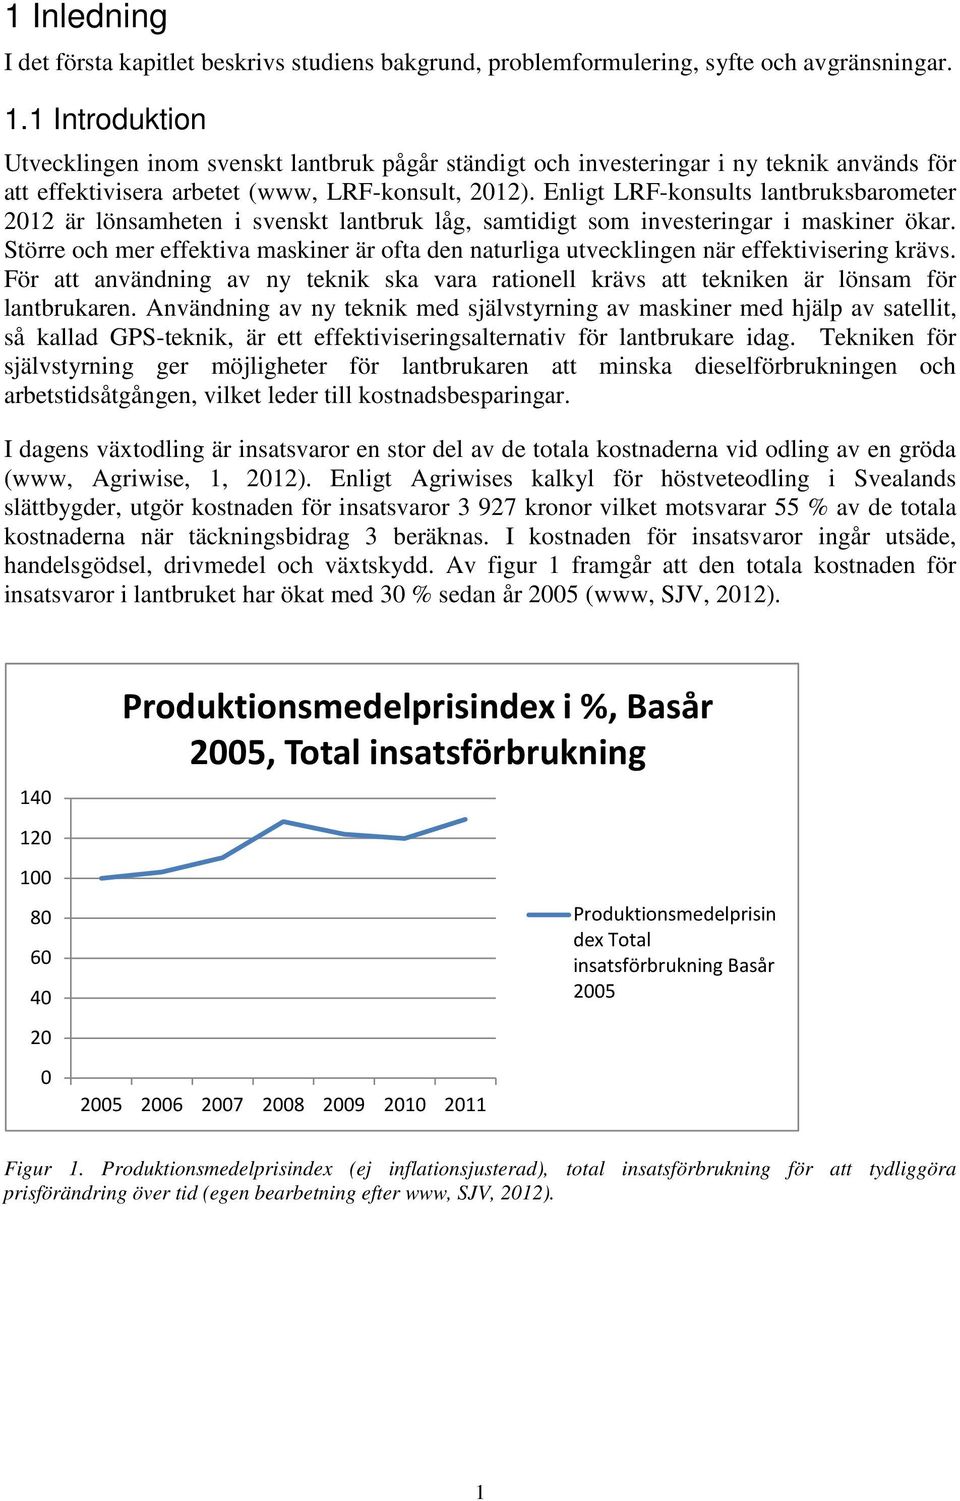 Enligt LRF-konsults lantbruksbarometer 2012 är lönsamheten i svenskt lantbruk låg, samtidigt som investeringar i maskiner ökar.